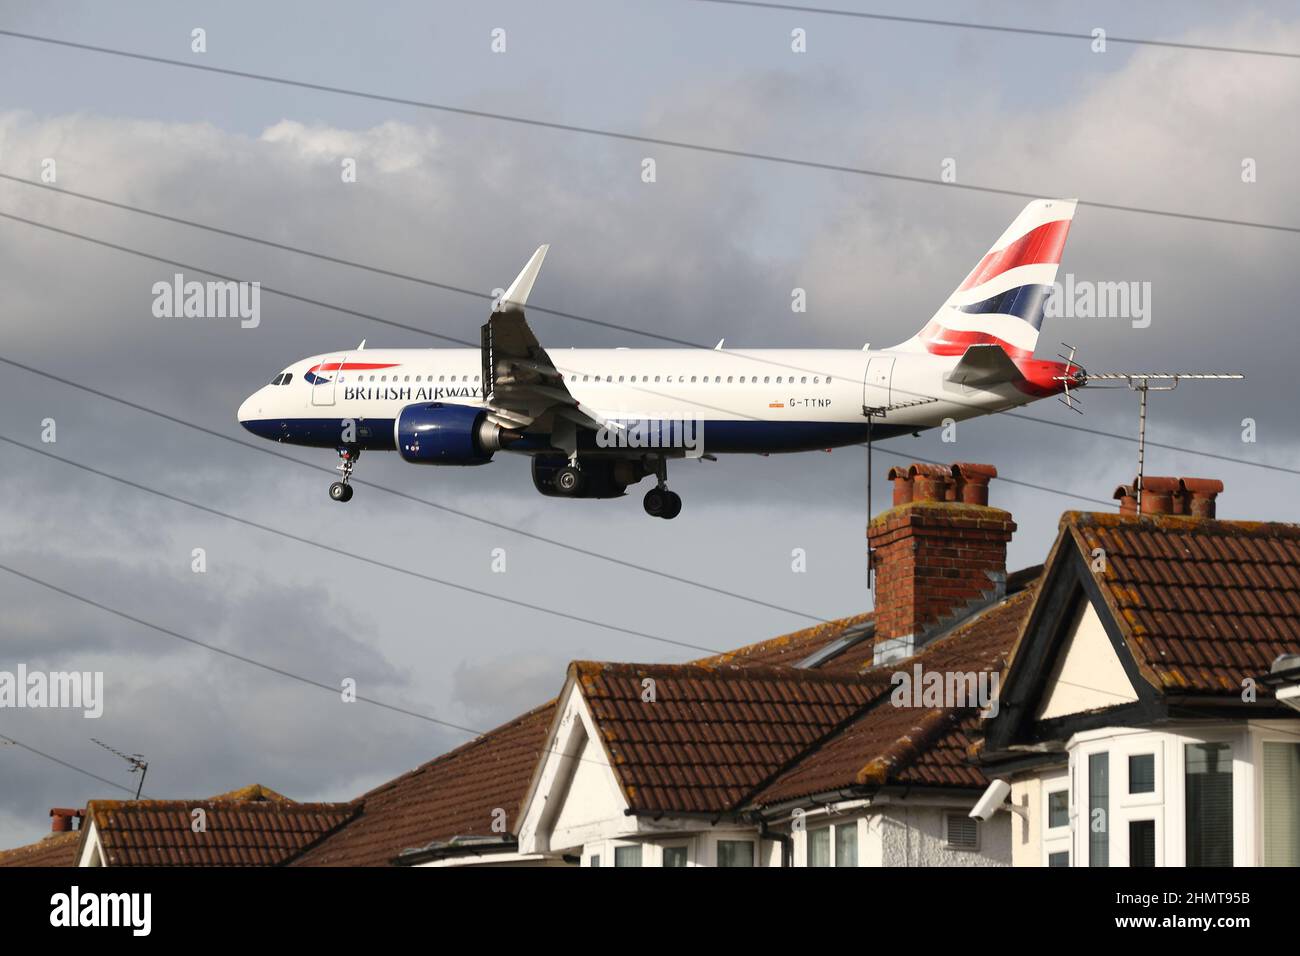 Un British Airways Airbus A320neo G-TTNP si avvicina all'aeroporto di Heathrow volando in basso sopra i tetti delle case in Myrtle Avenue, Londra, Regno Unito Foto Stock